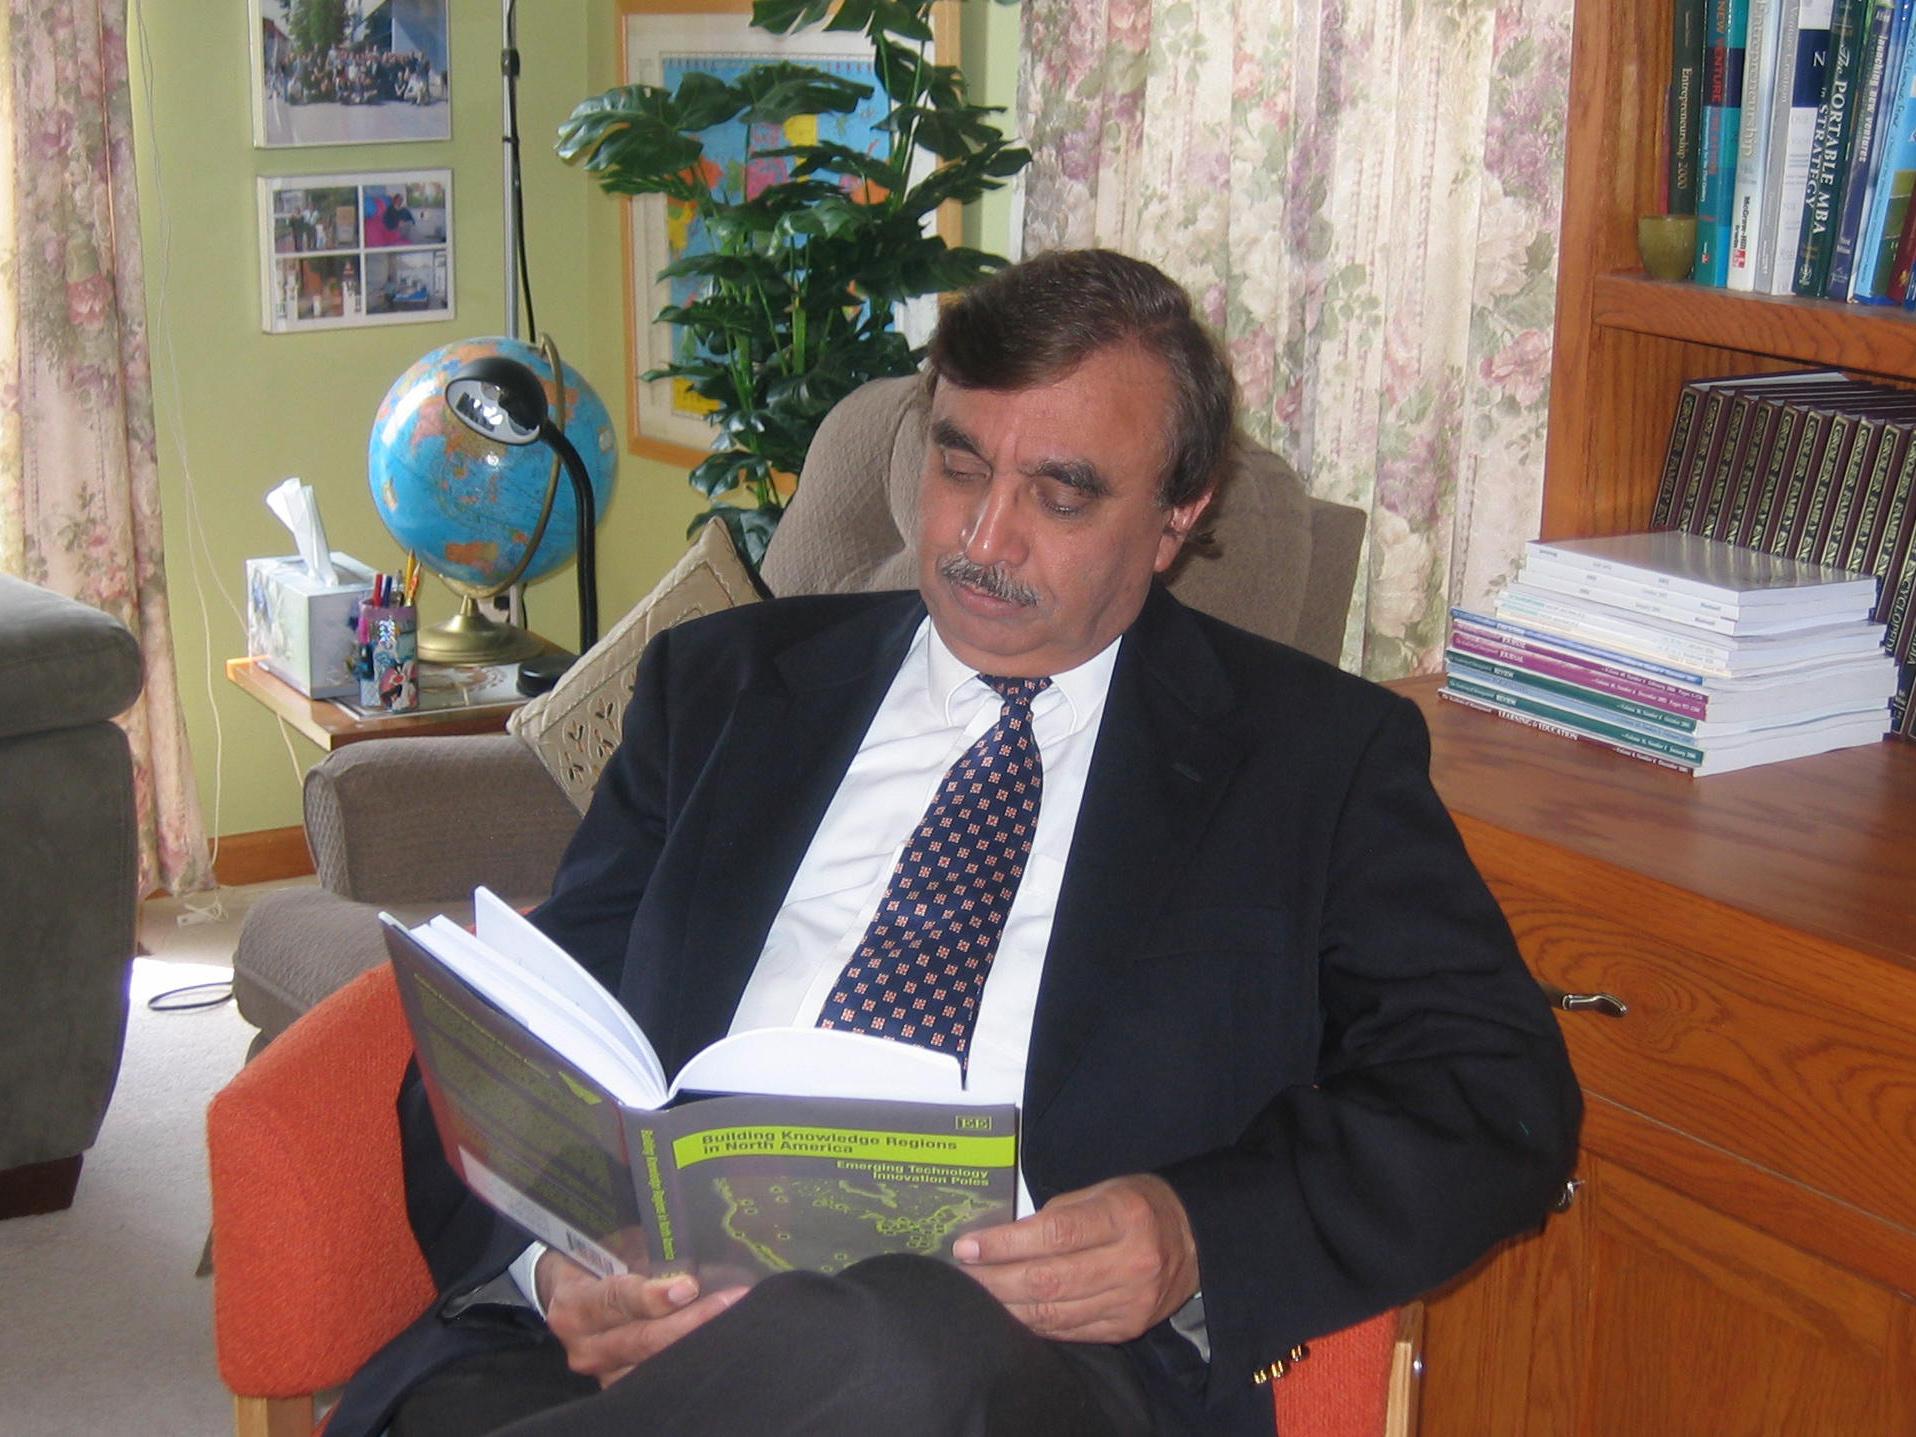 Sarfraz Mian reading one of his books